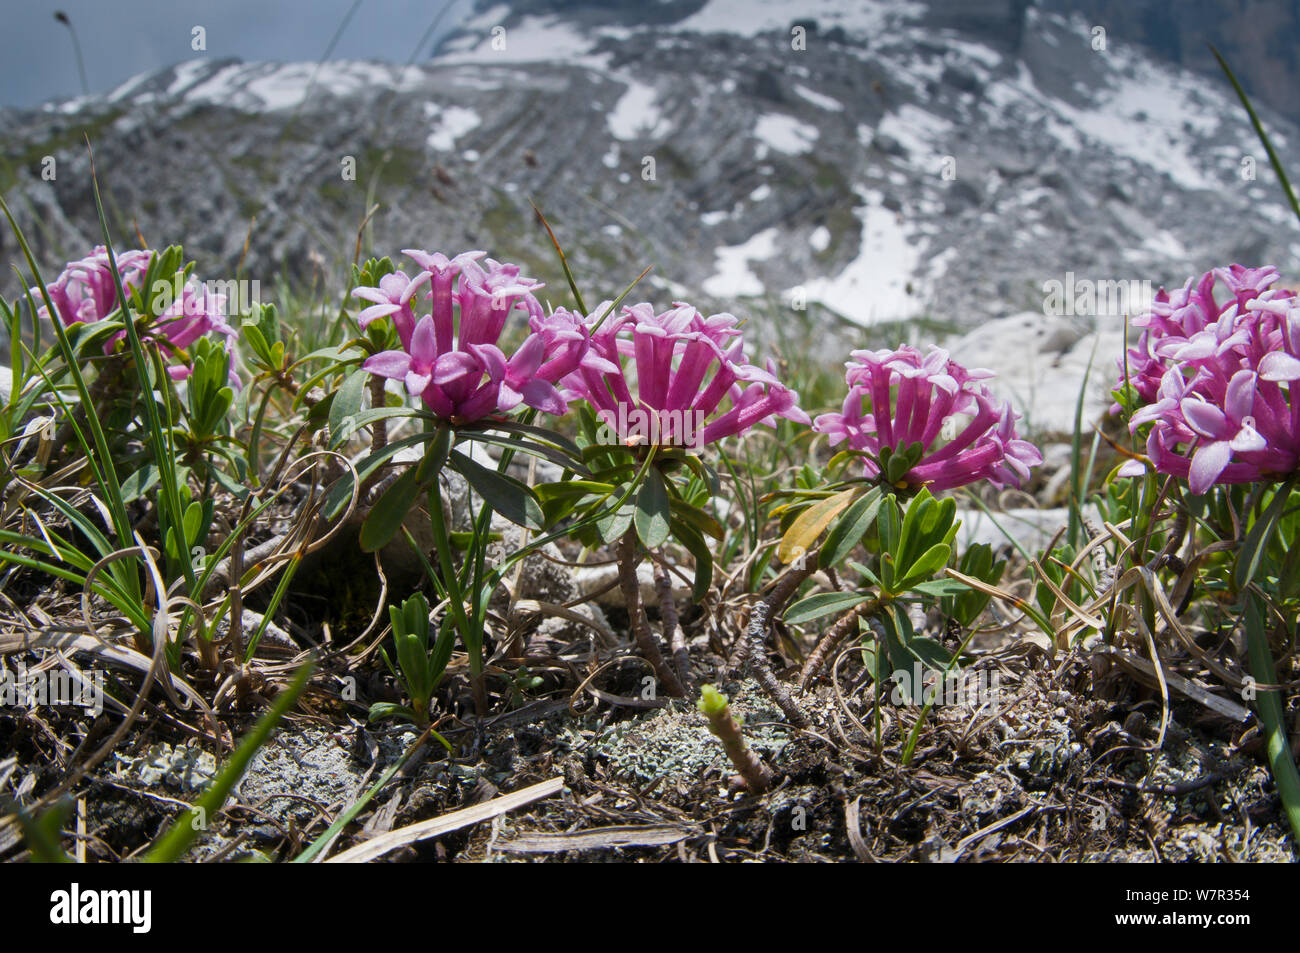 Garland flower (Daphne cneorum) in flower, Monte Spinale, alpine zone, Madonna di Campiglio, Brenta Dolomites, Italy, July Stock Photo